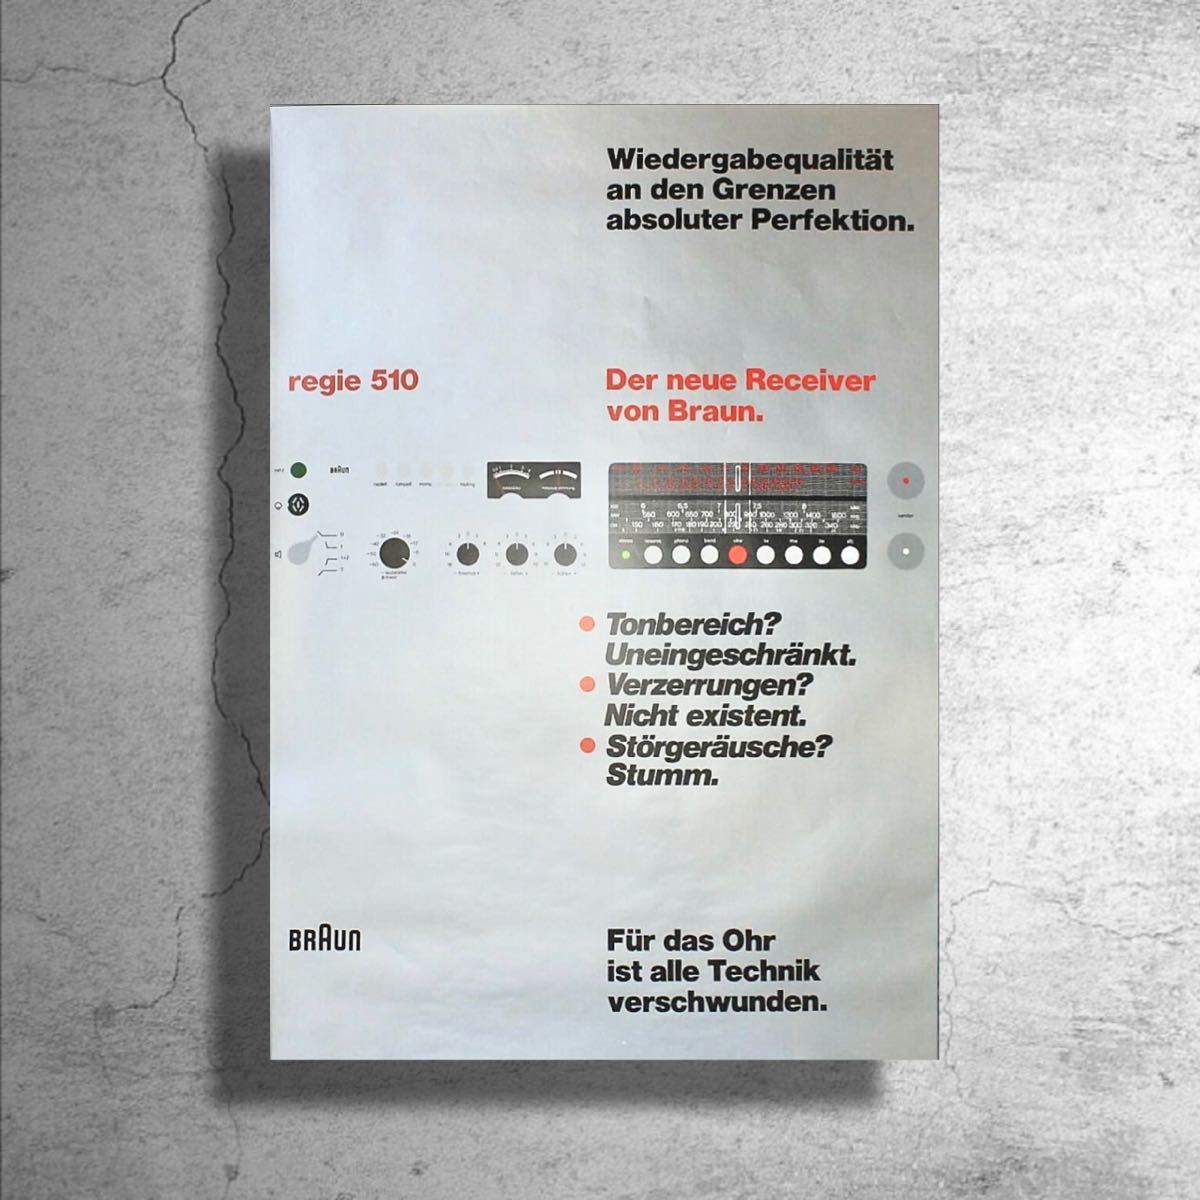 標準保証 ディーター・ラムス BRAUN 「Regie 510」ドイツ限定ポスター/プロダクトデザインミニマルbauhausバウハウスブラウン 印刷物